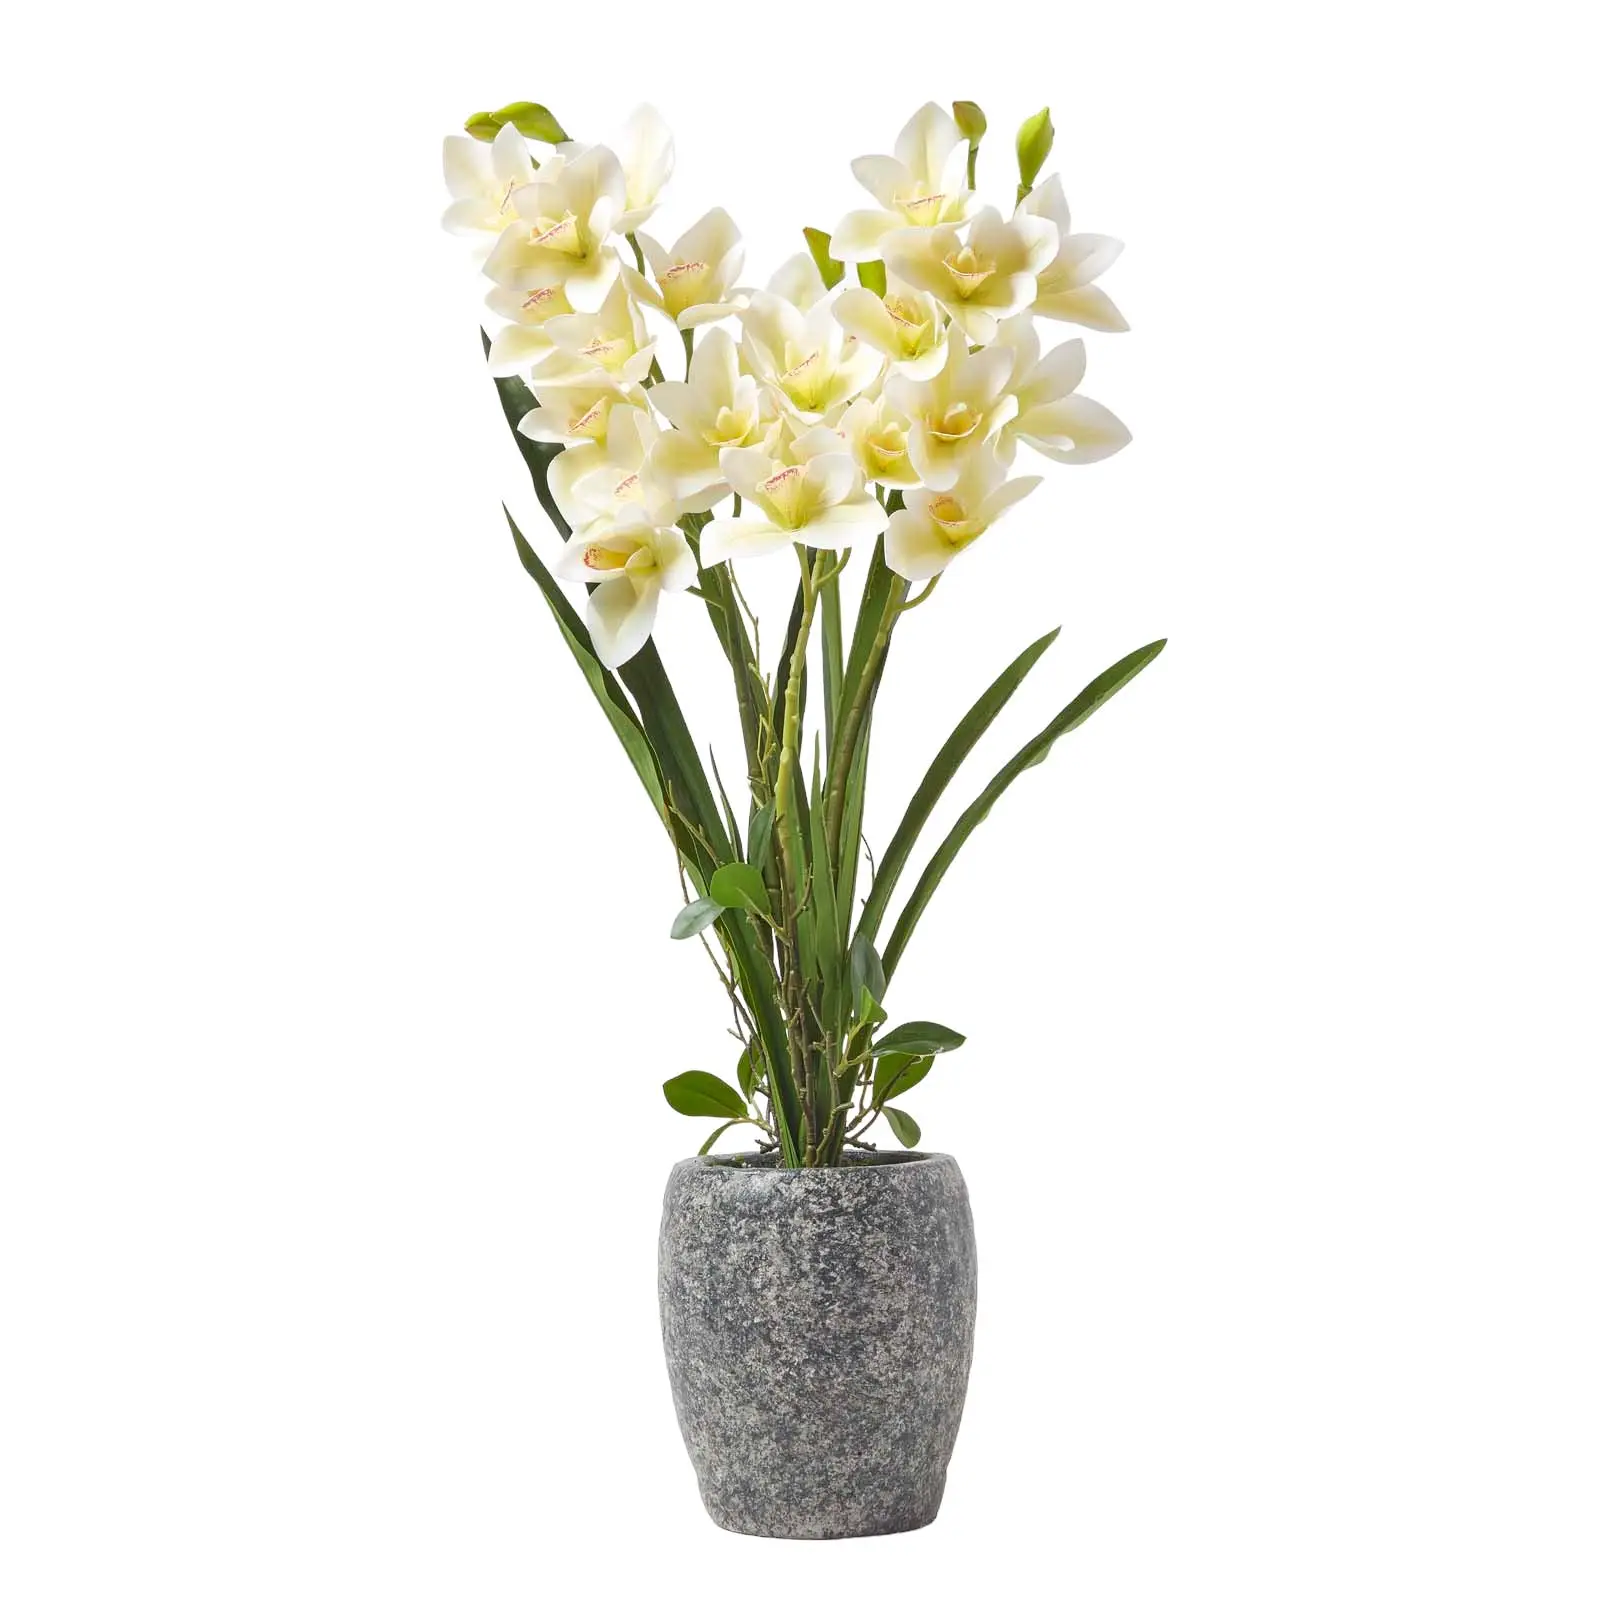 K眉nstliche Orchidee im Zement